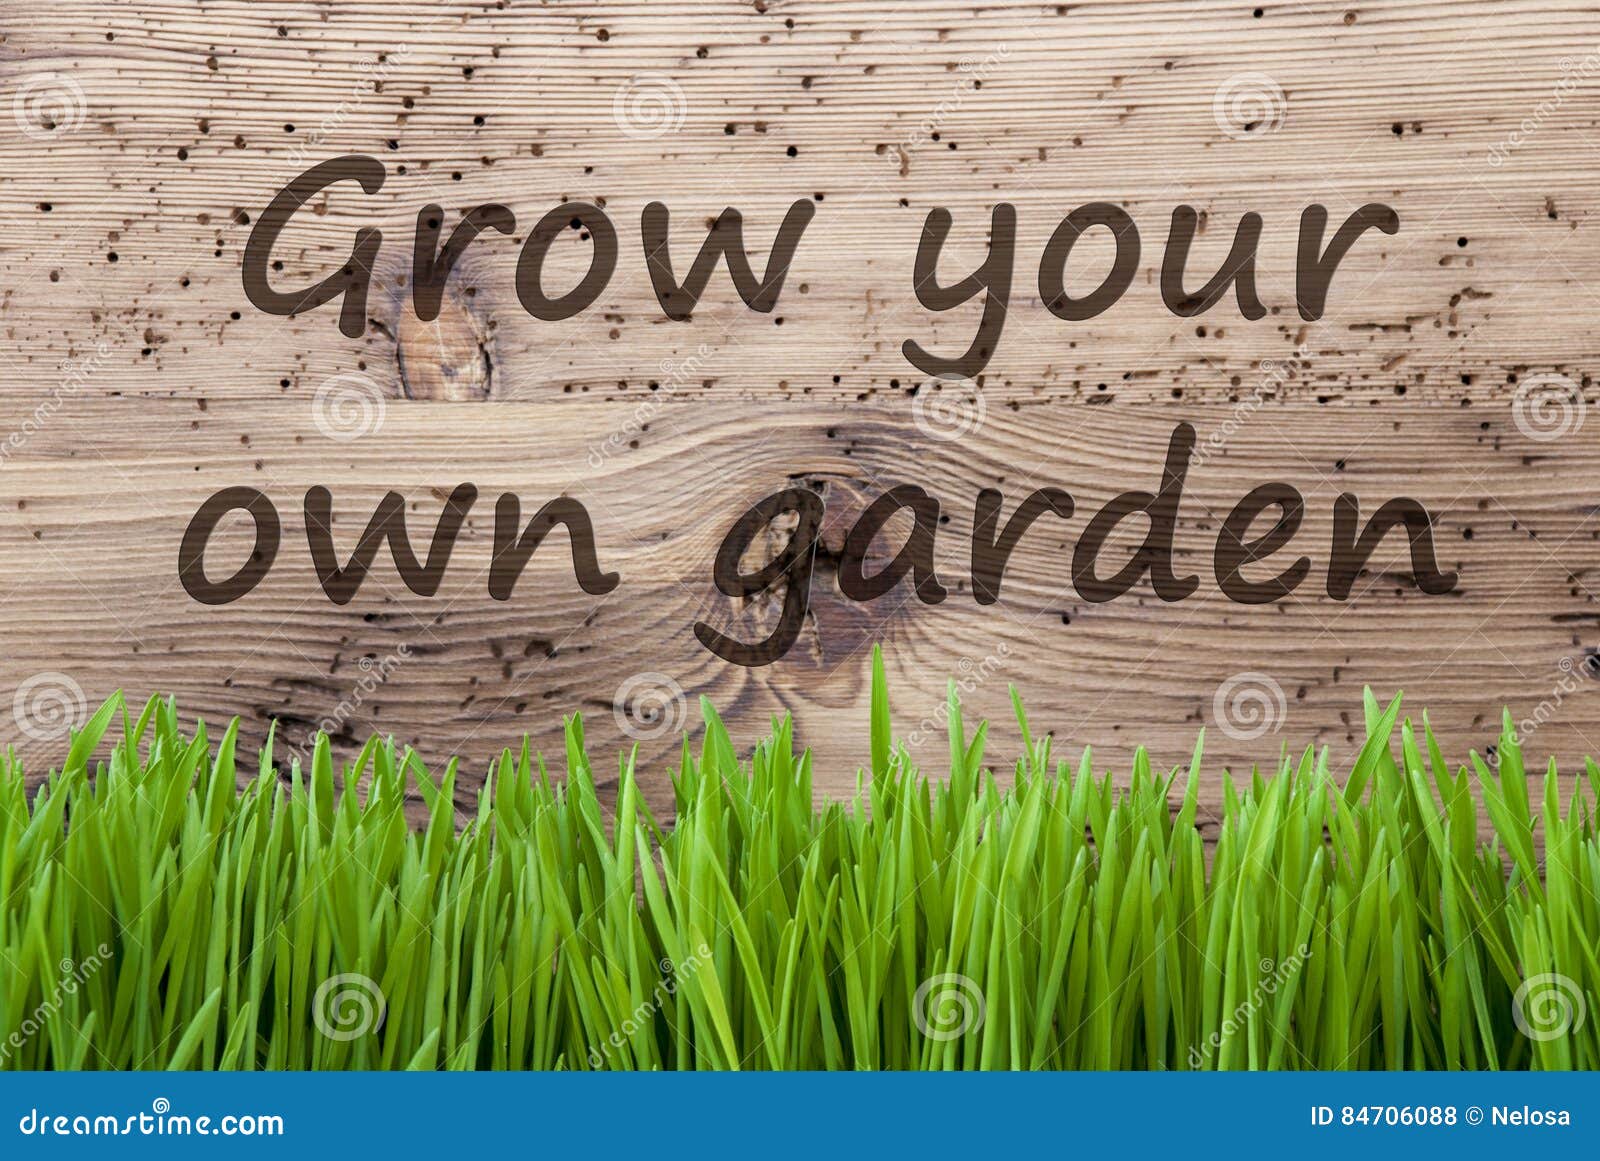 bright wooden background, gras, grow your own garden